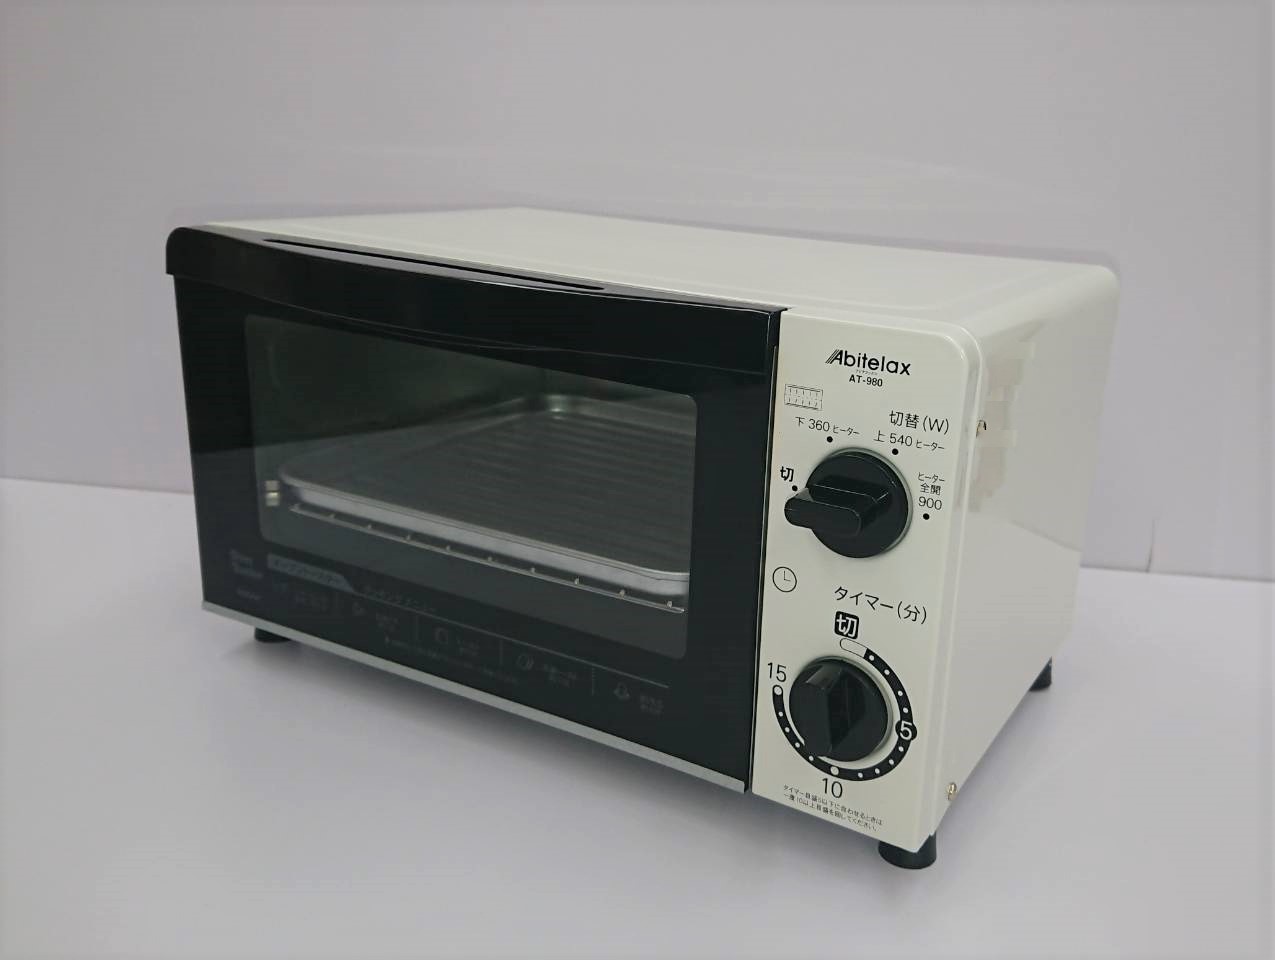 オーブントースター AT-980(W)